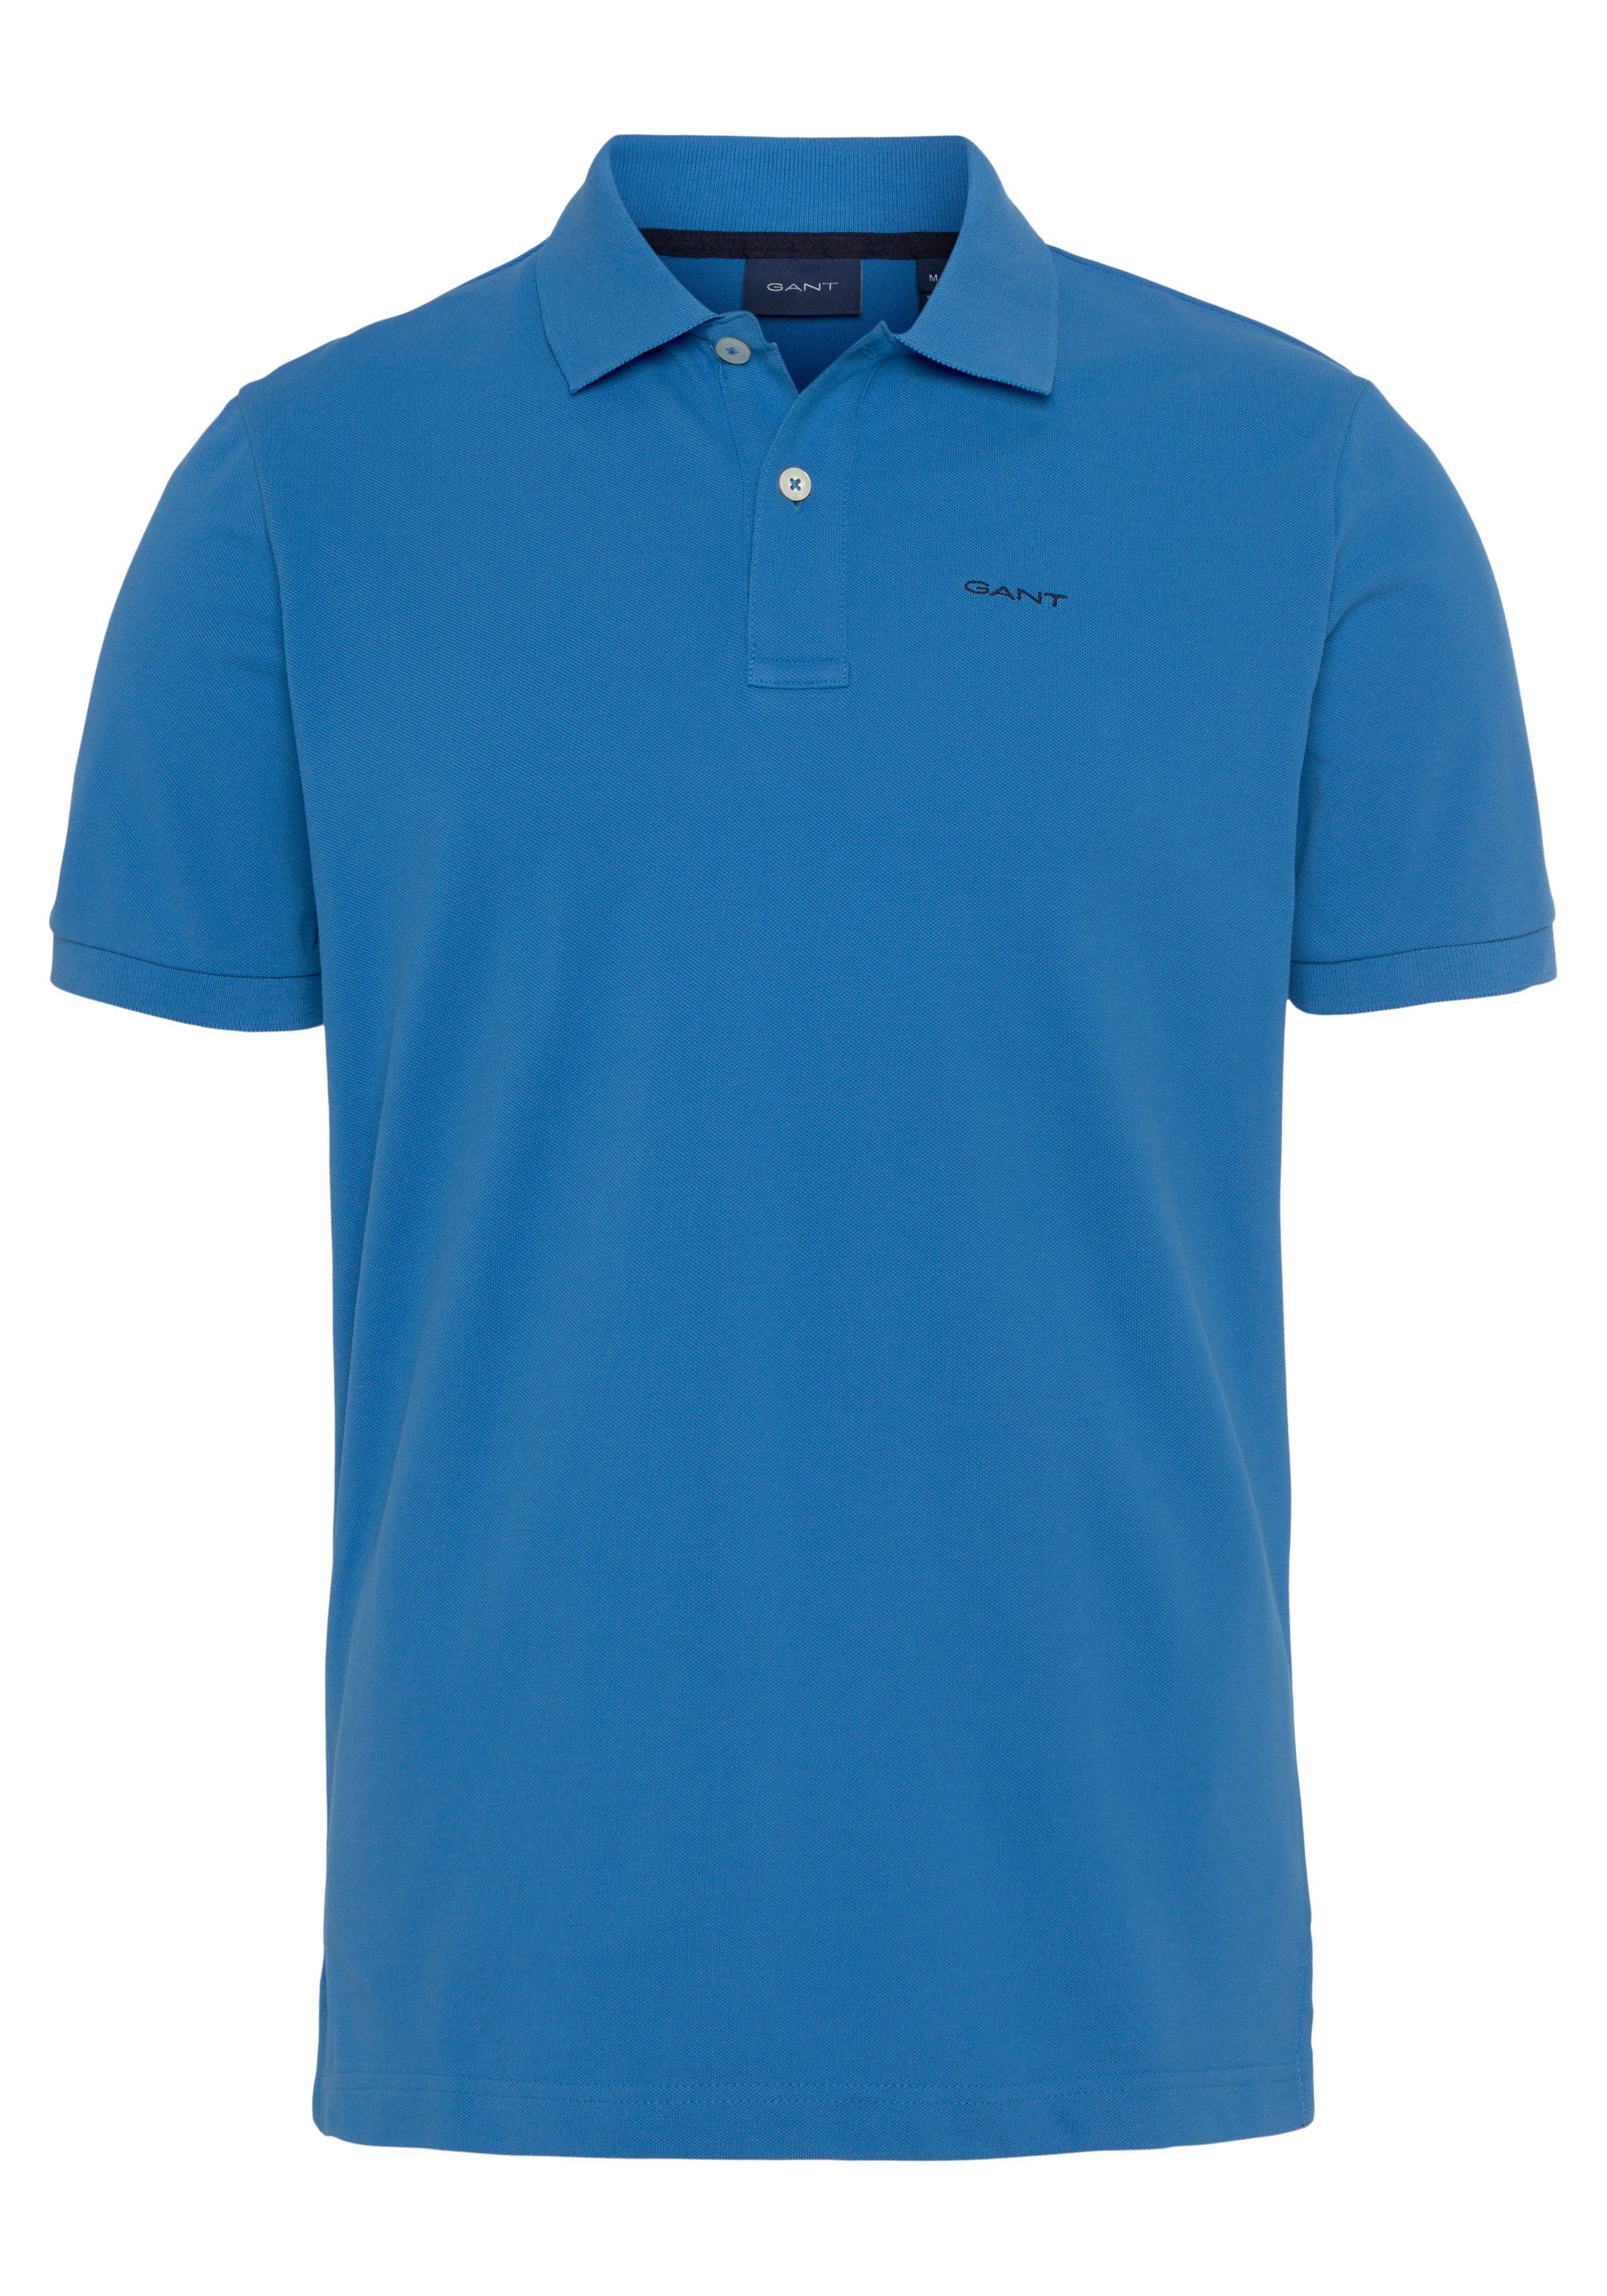 day RUGGER Smart Piqué-Polo Regular Fit, Poloshirt blue Gant KA Premium Qualität Casual, MD. Shirt, PIQUE